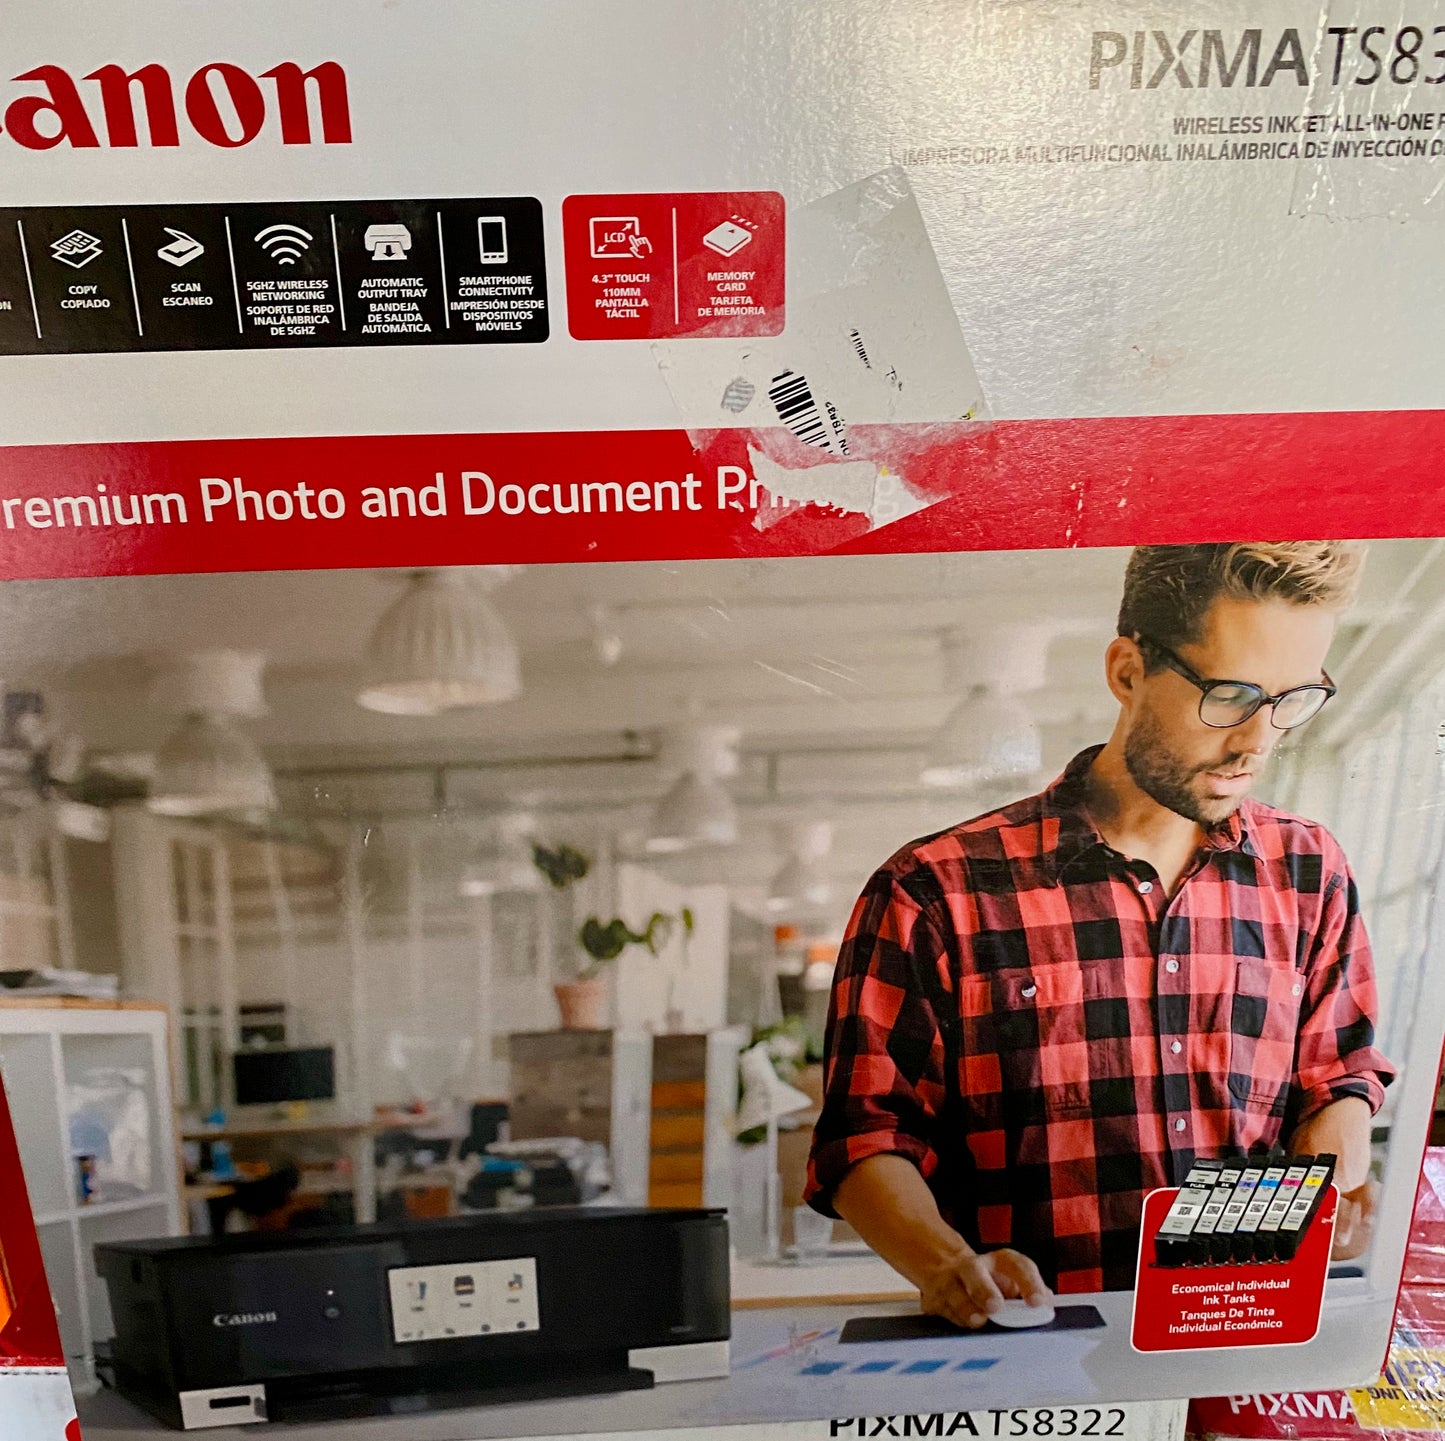 Canon Pixma Wireless All In One Printer TS3322